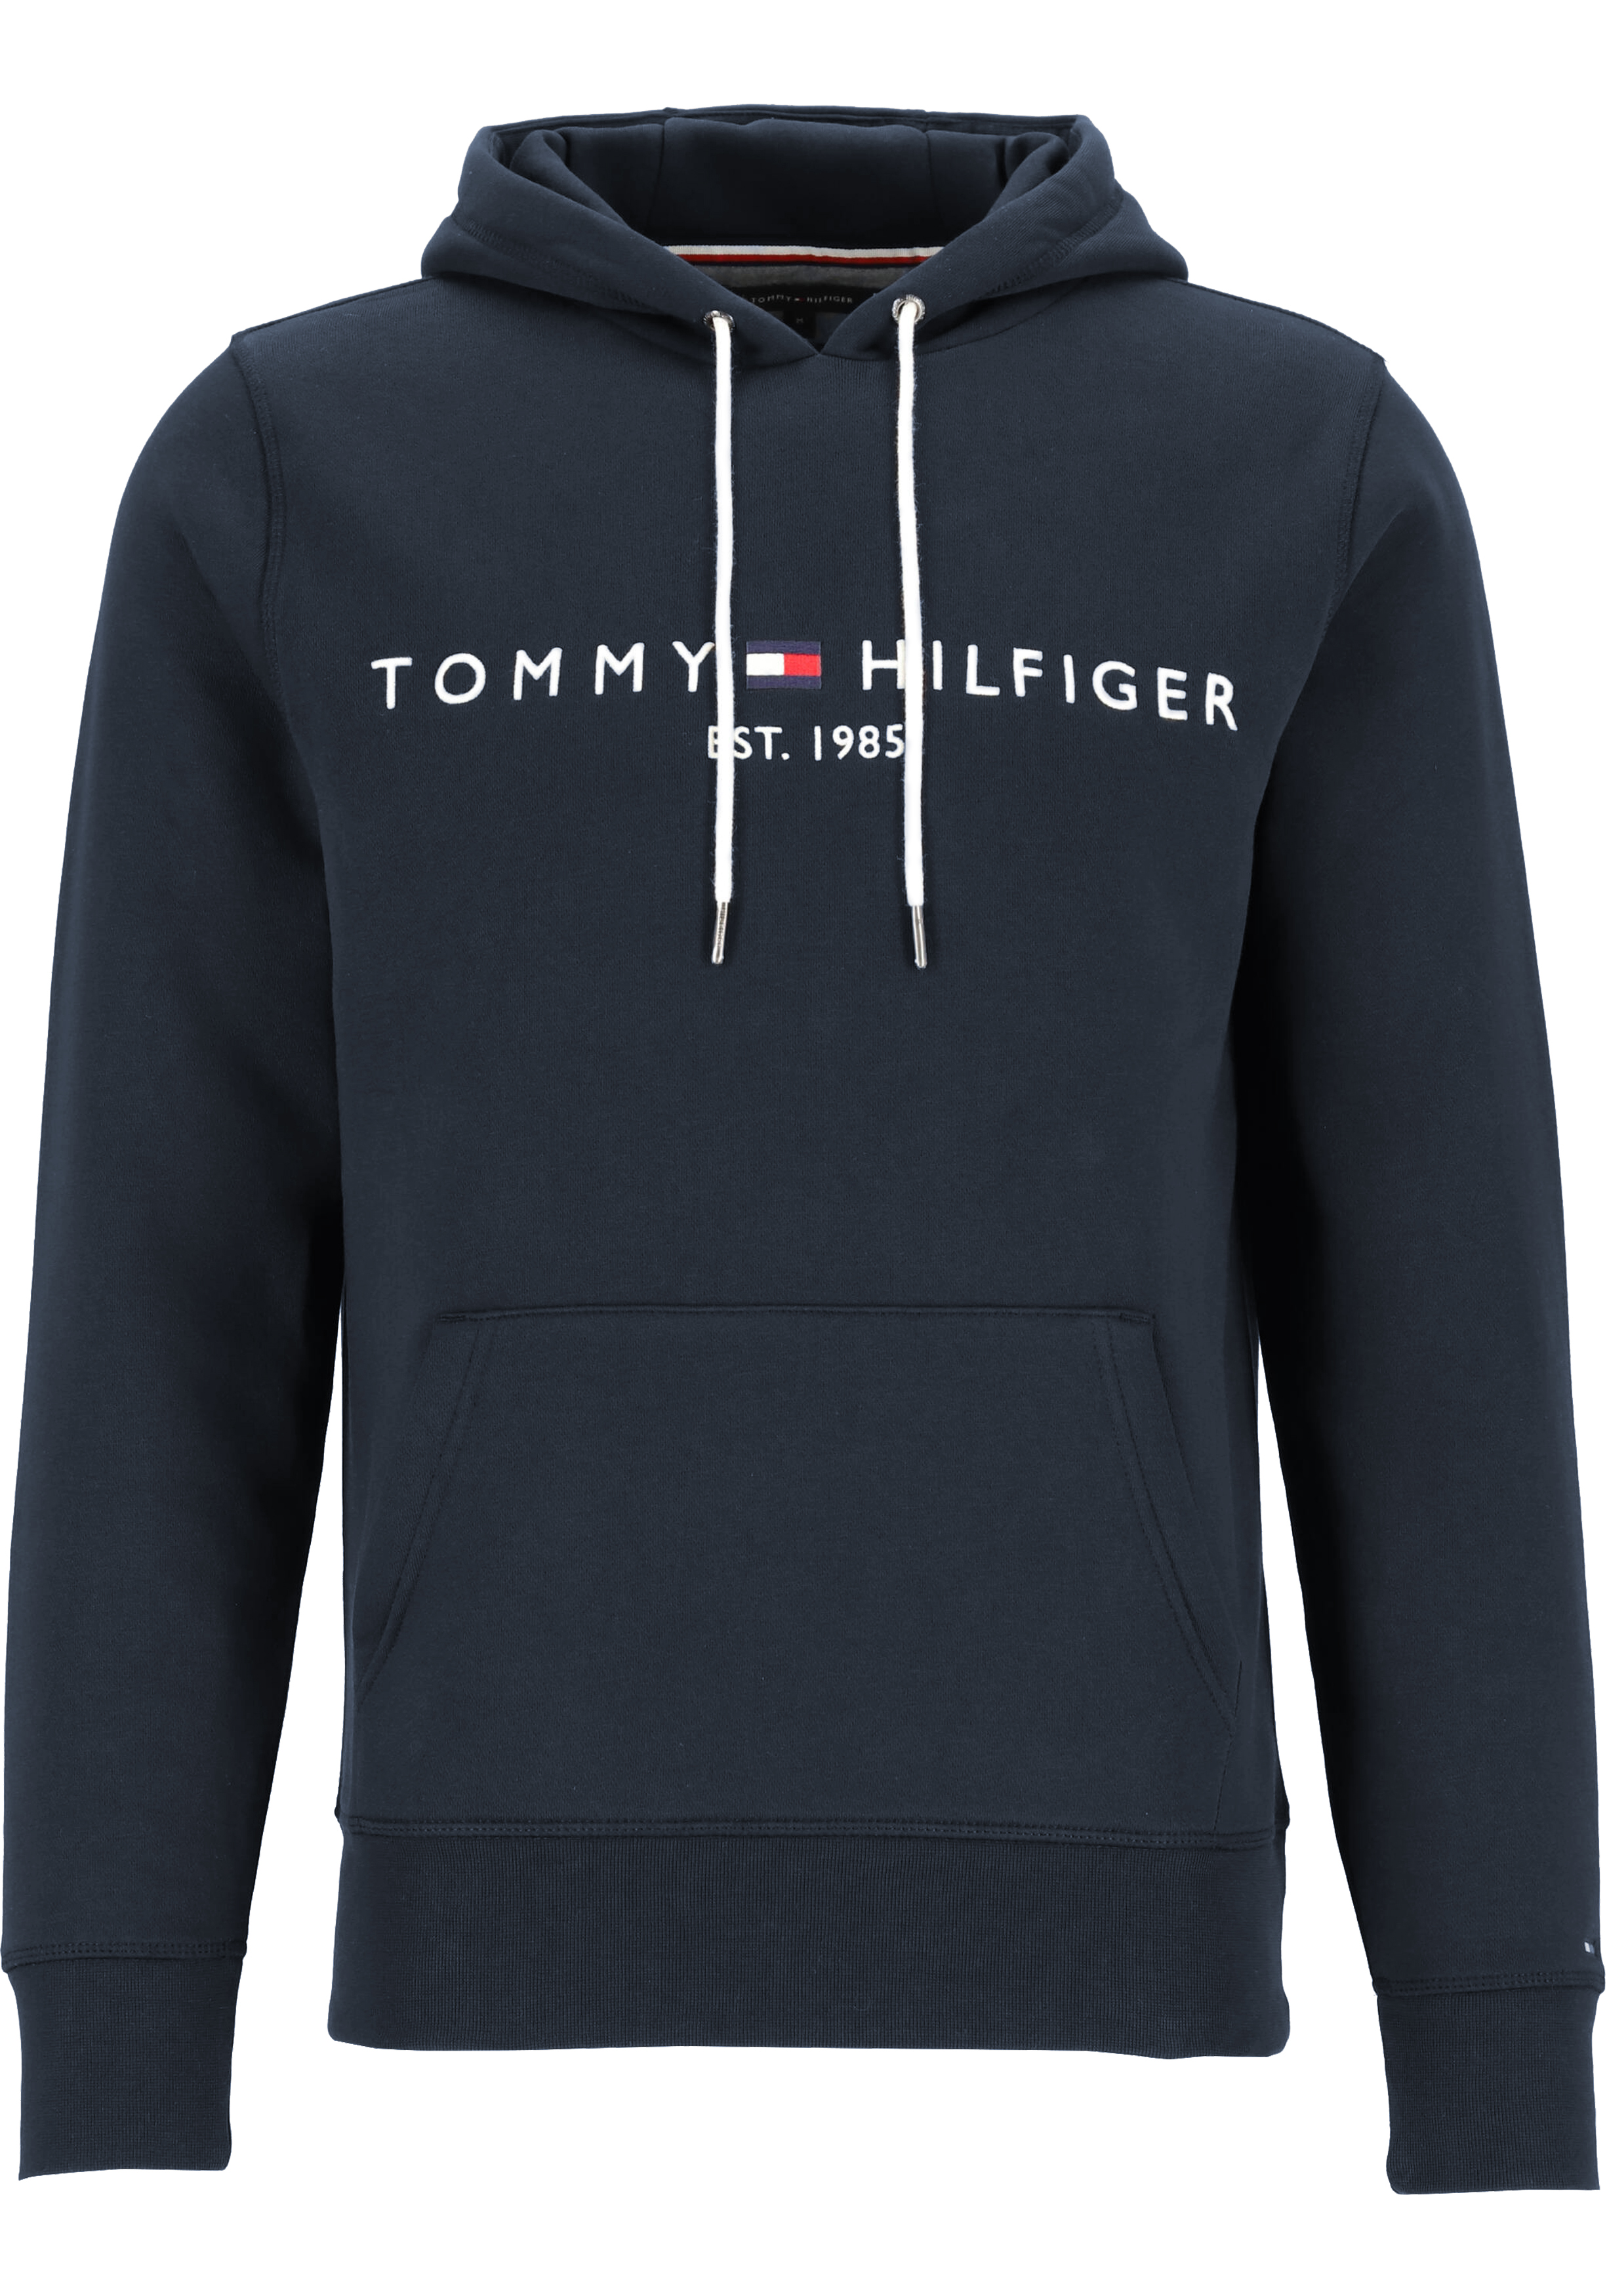 Distilleren Doodt Klem Tommy Hilfiger Core Tommy logo hoody, regular fit heren sweathoodie,... -  vakantie DEALS: bestel vele artikelen van topmerken met korting